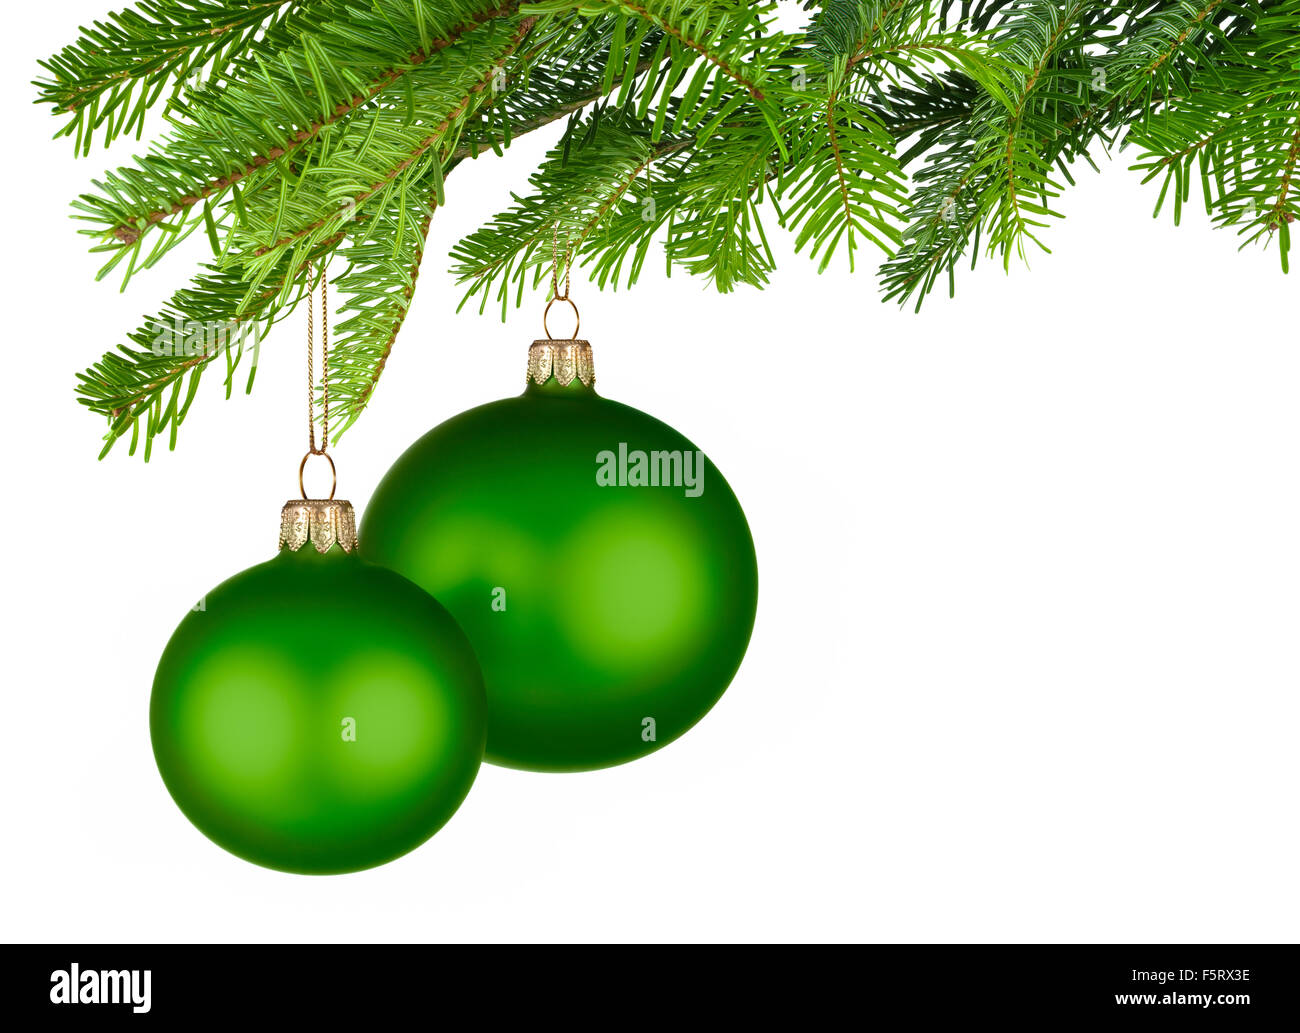 Studio lumineux tourné de deux boules de Noël vert isolés pendant de brindilles de sapin vert frais Banque D'Images